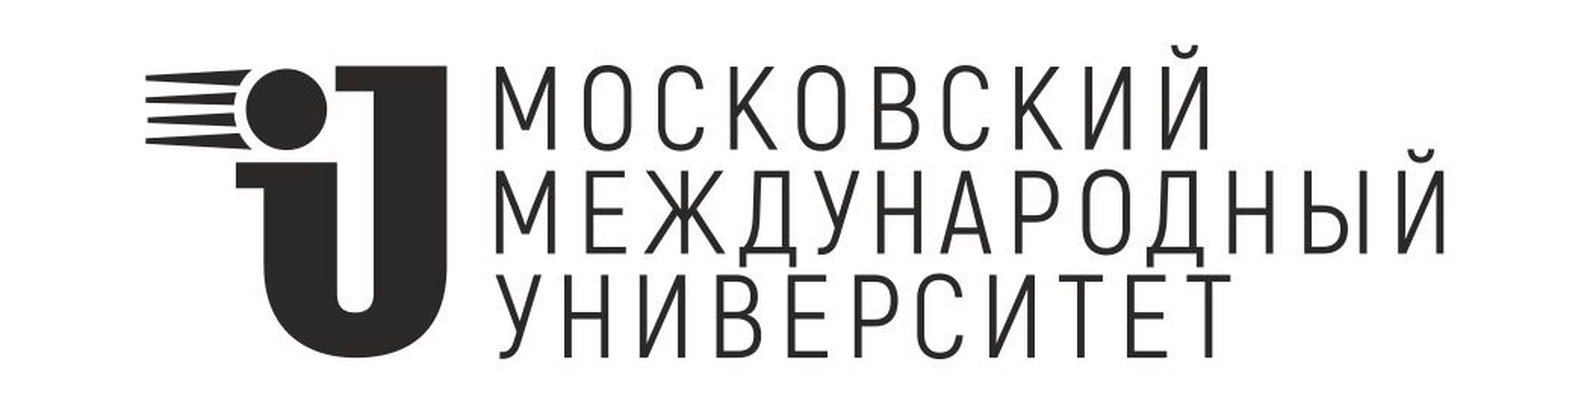 Логотип (Московский Международный университет)